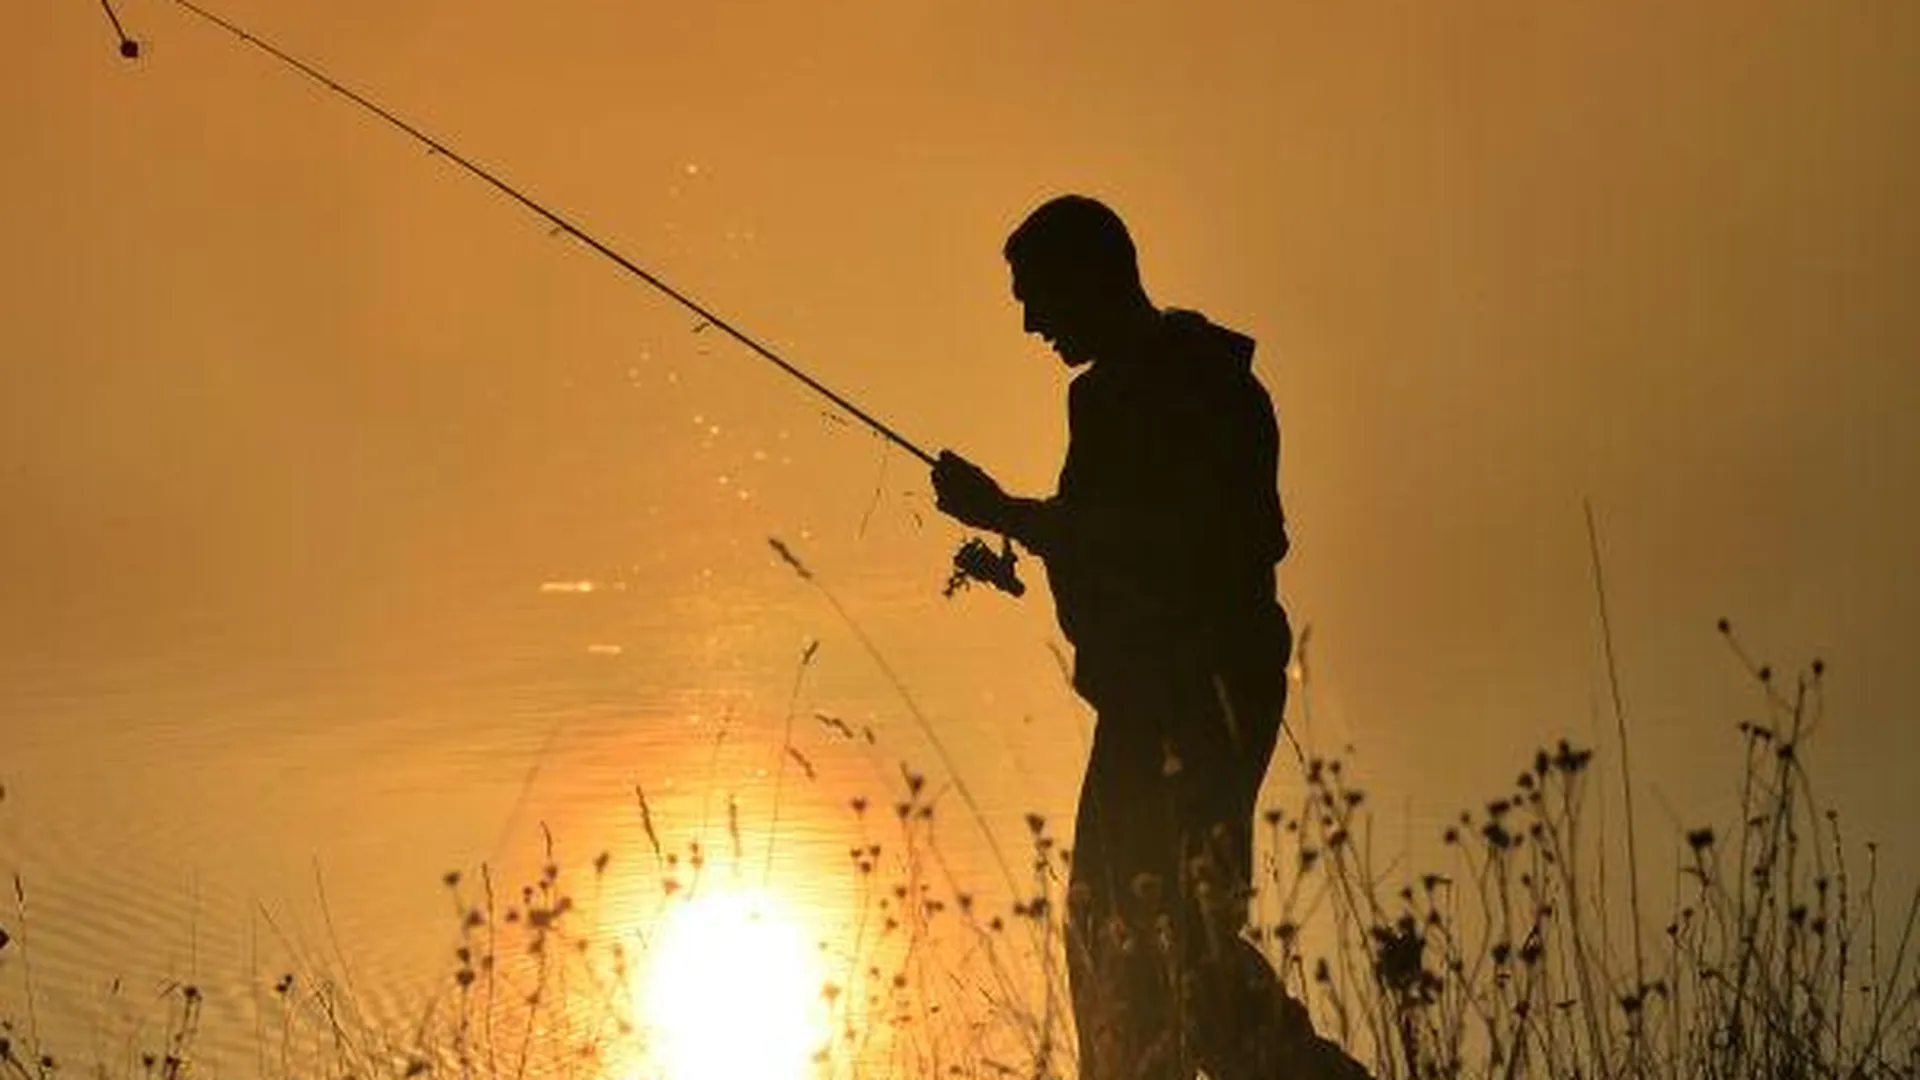 Ограничение на рыбалку в Подмосковье снимается со среды